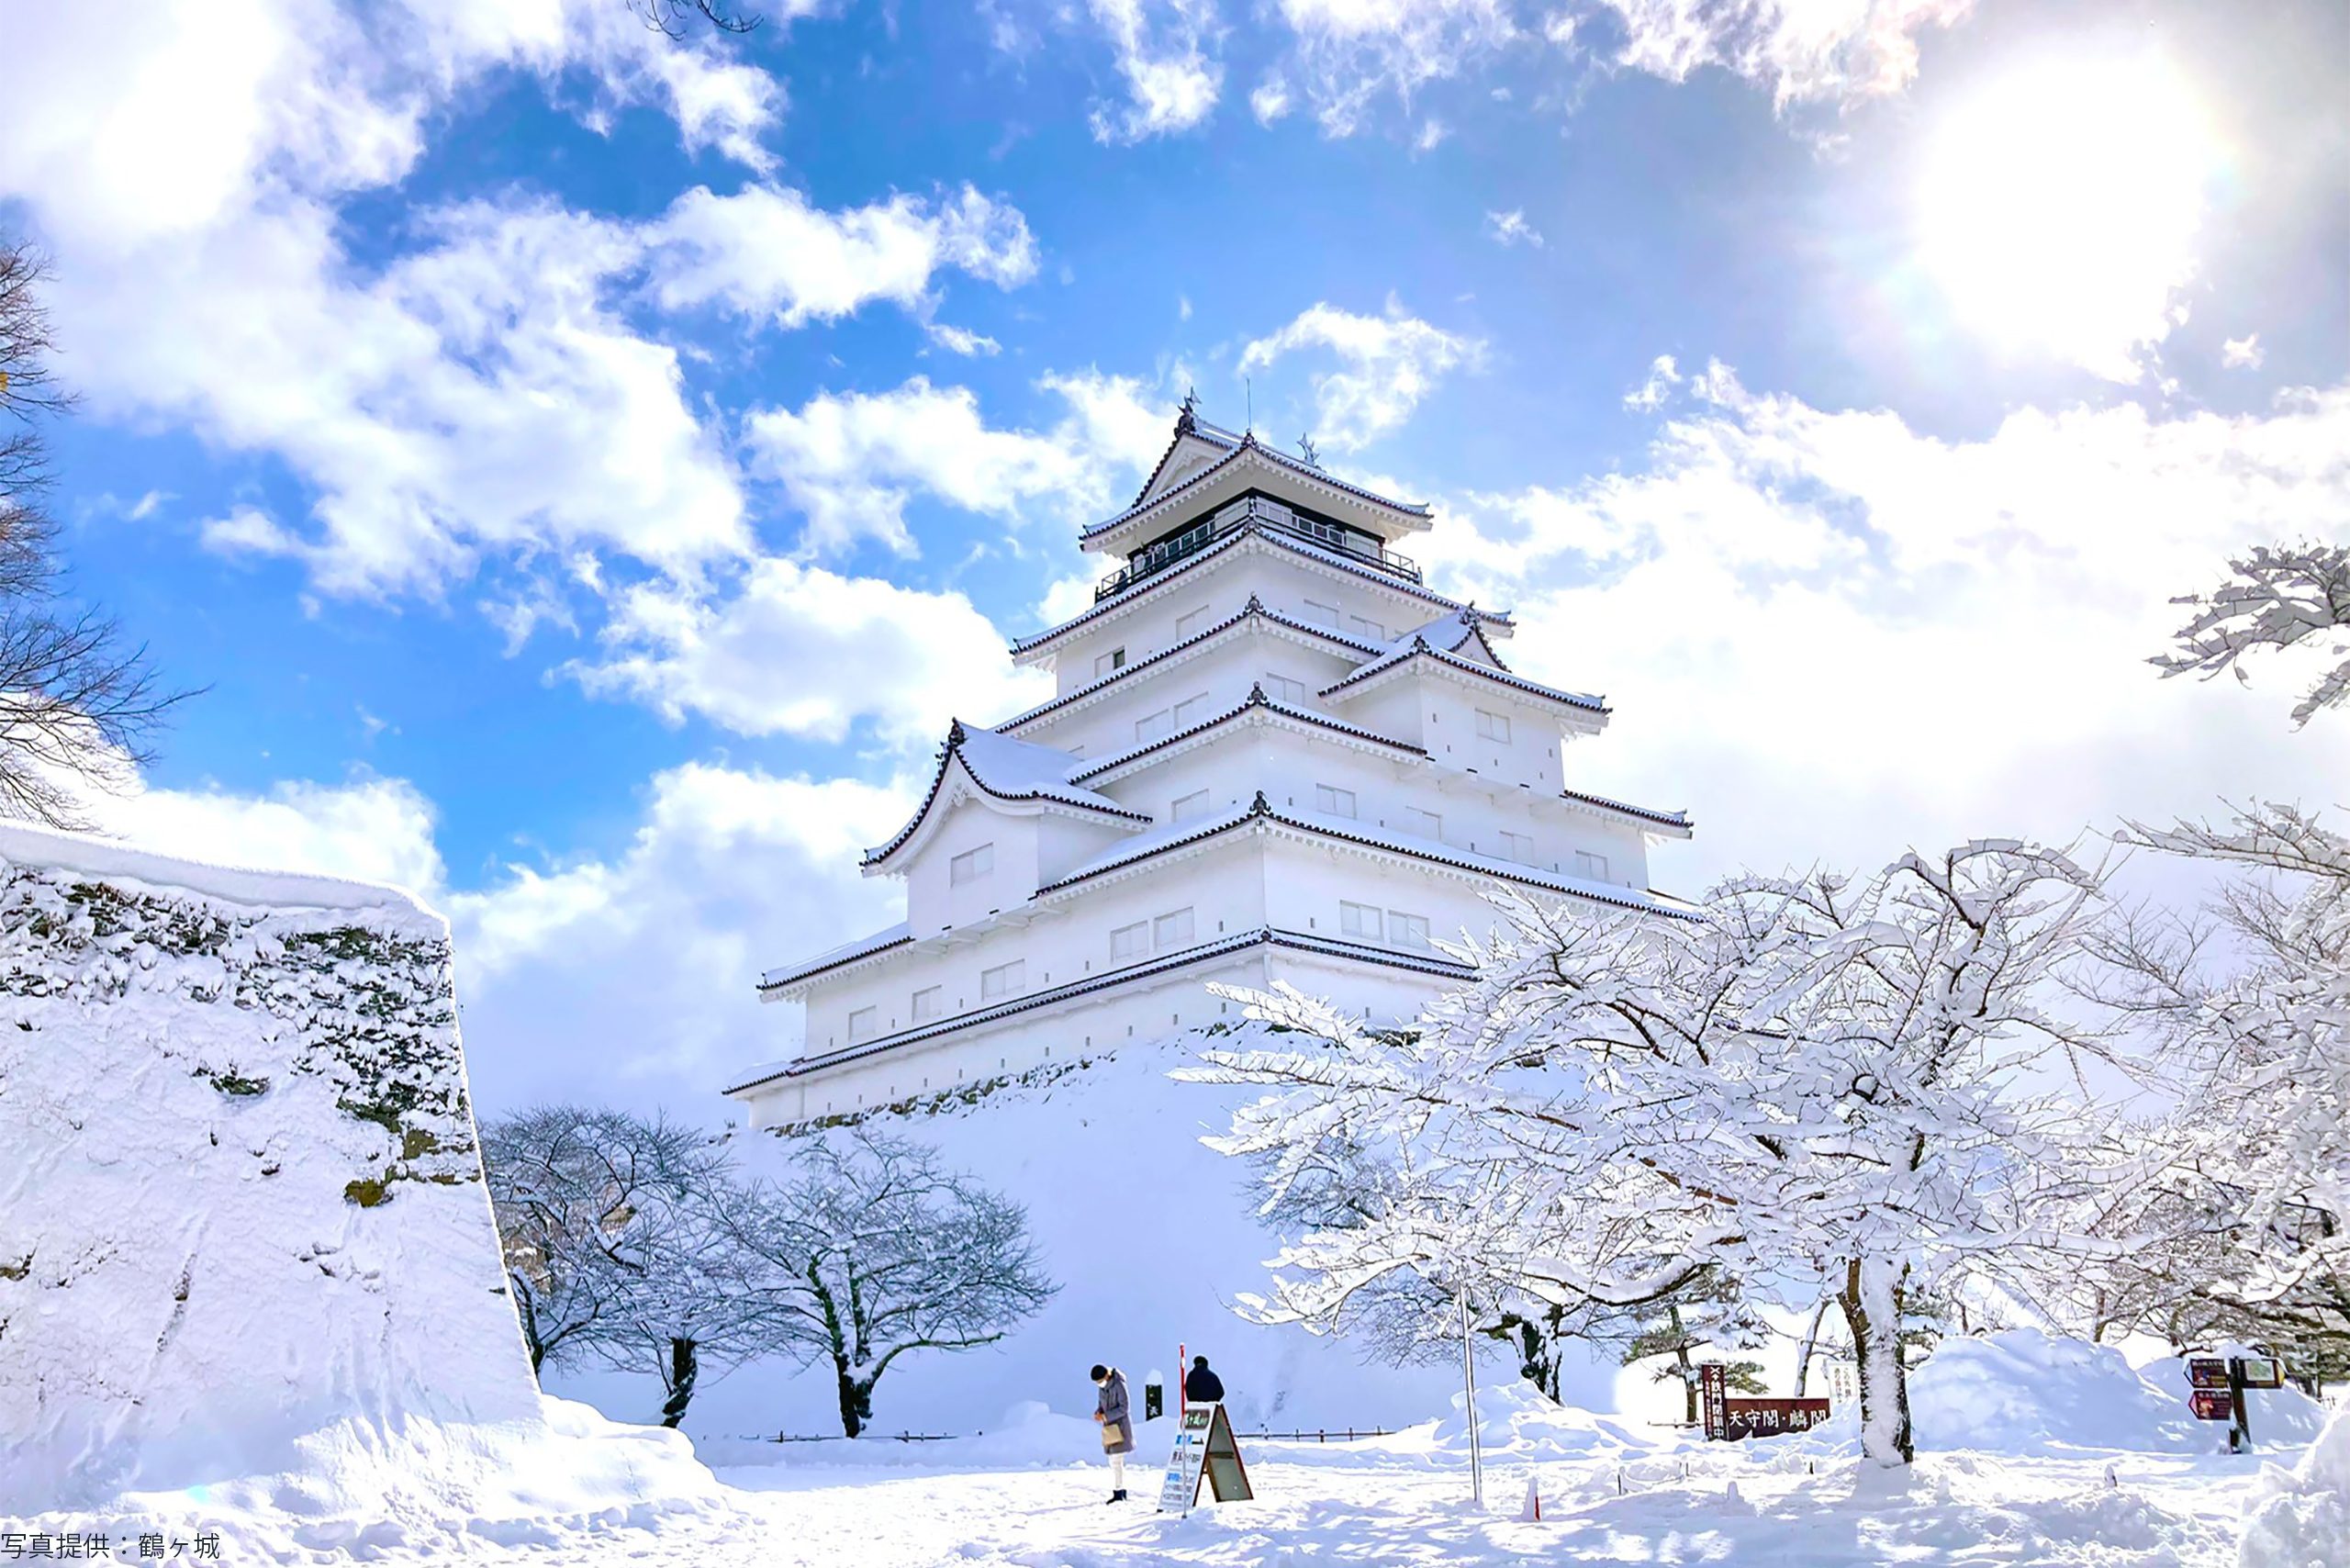 会津鶴ヶ城が雪で 神々しい 雰囲気に スタッフも 奇跡の1枚 Sirabee